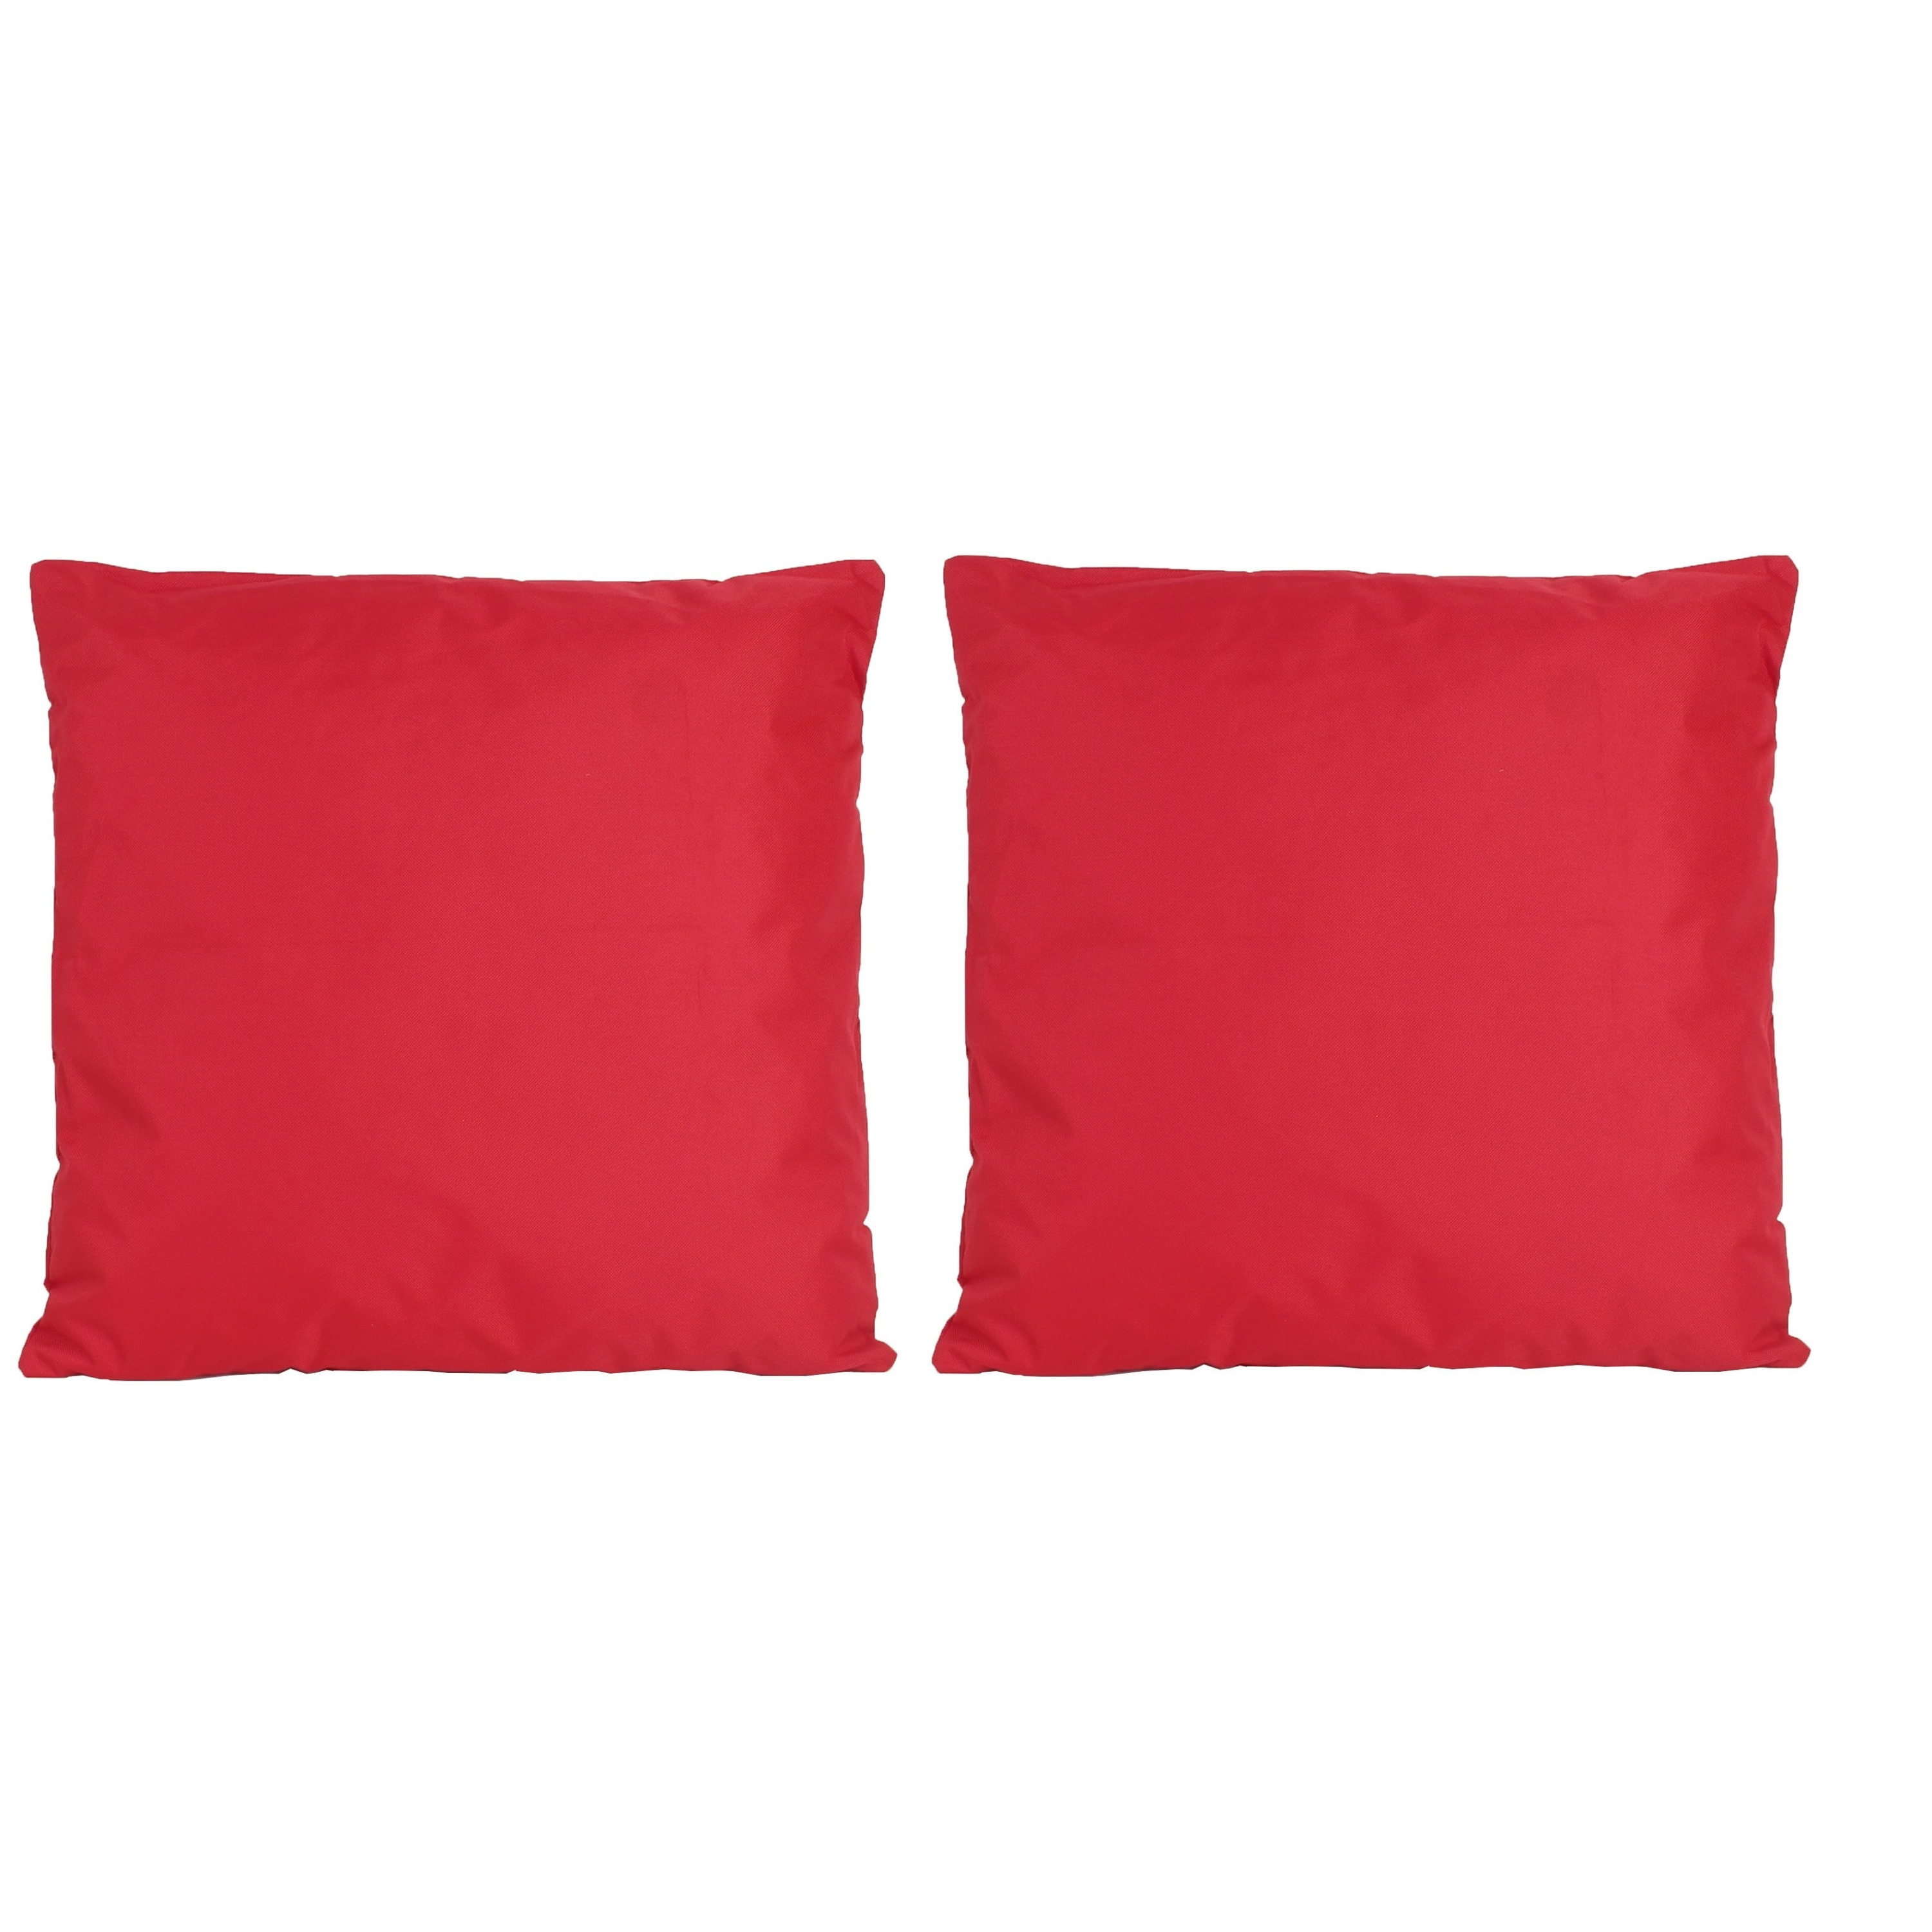 8x Bank-sier kussens voor binnen en buiten in de kleur rood 45 x 45 cm